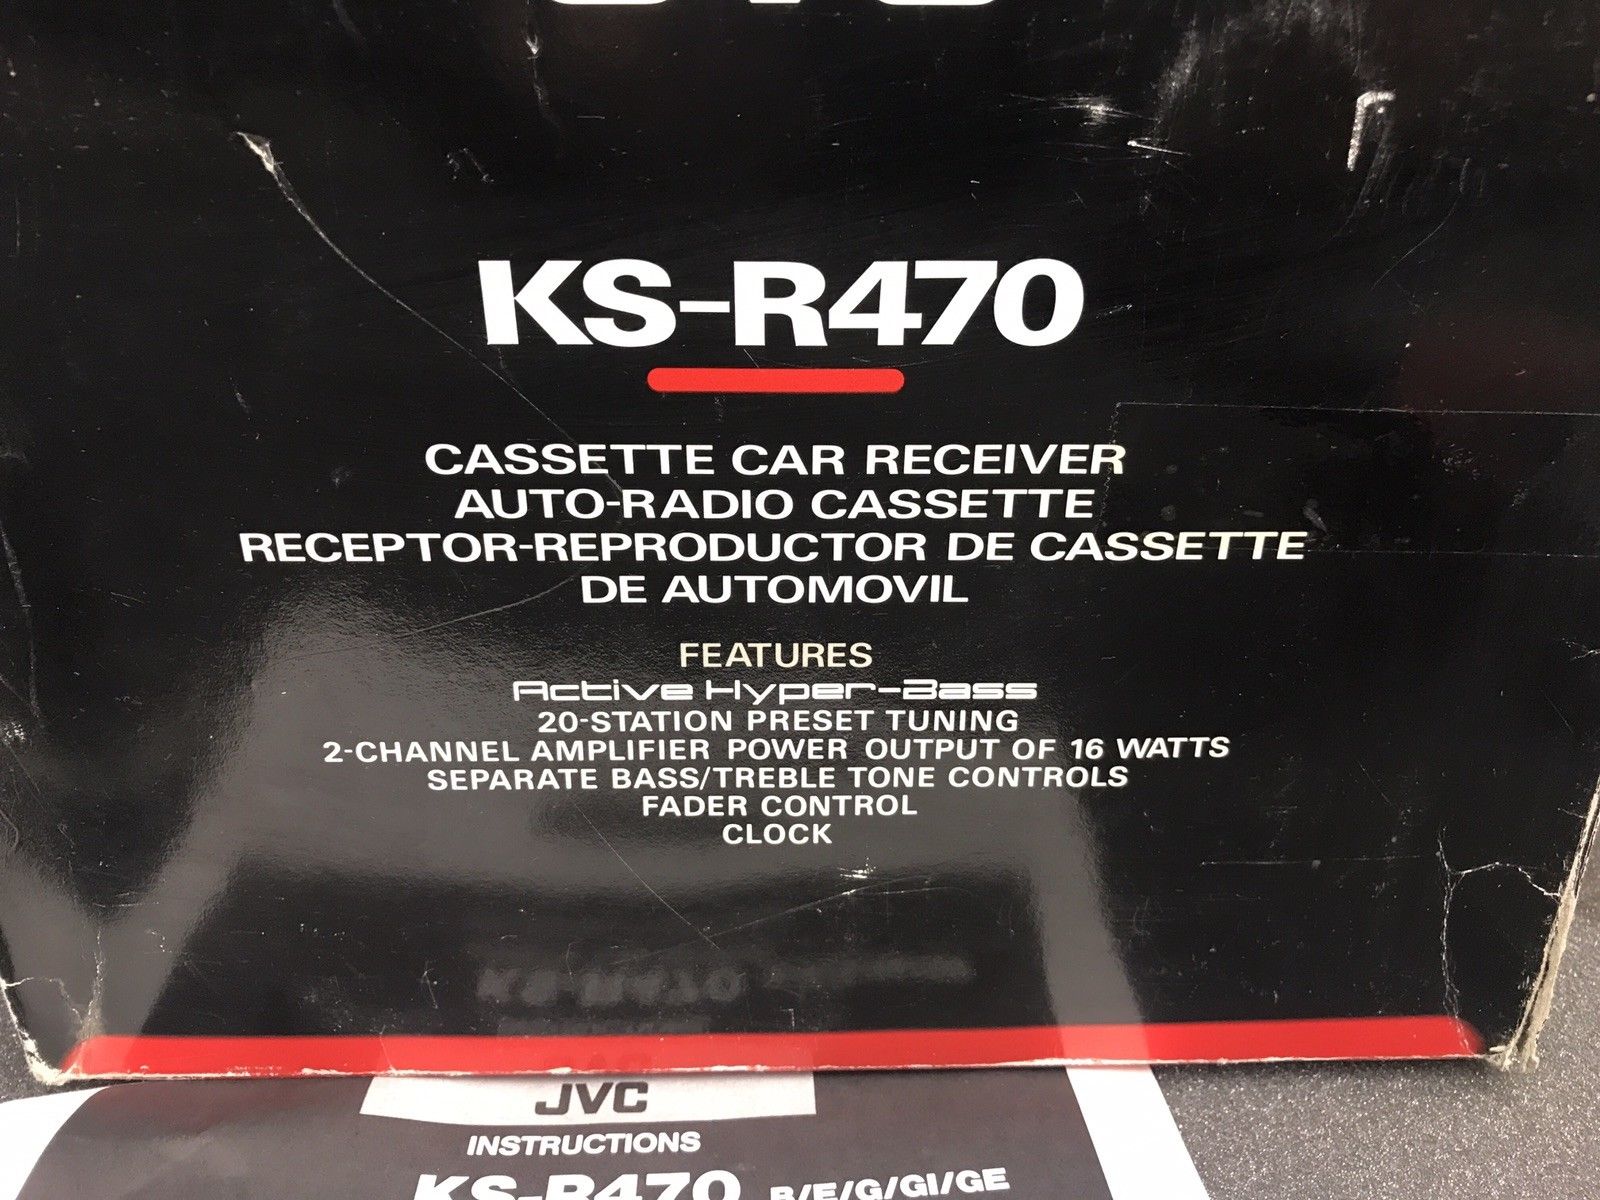 Old Classic Boxed Jvc Car Radio Cassette Player Model Ks-R470 Hyper-Bass Model